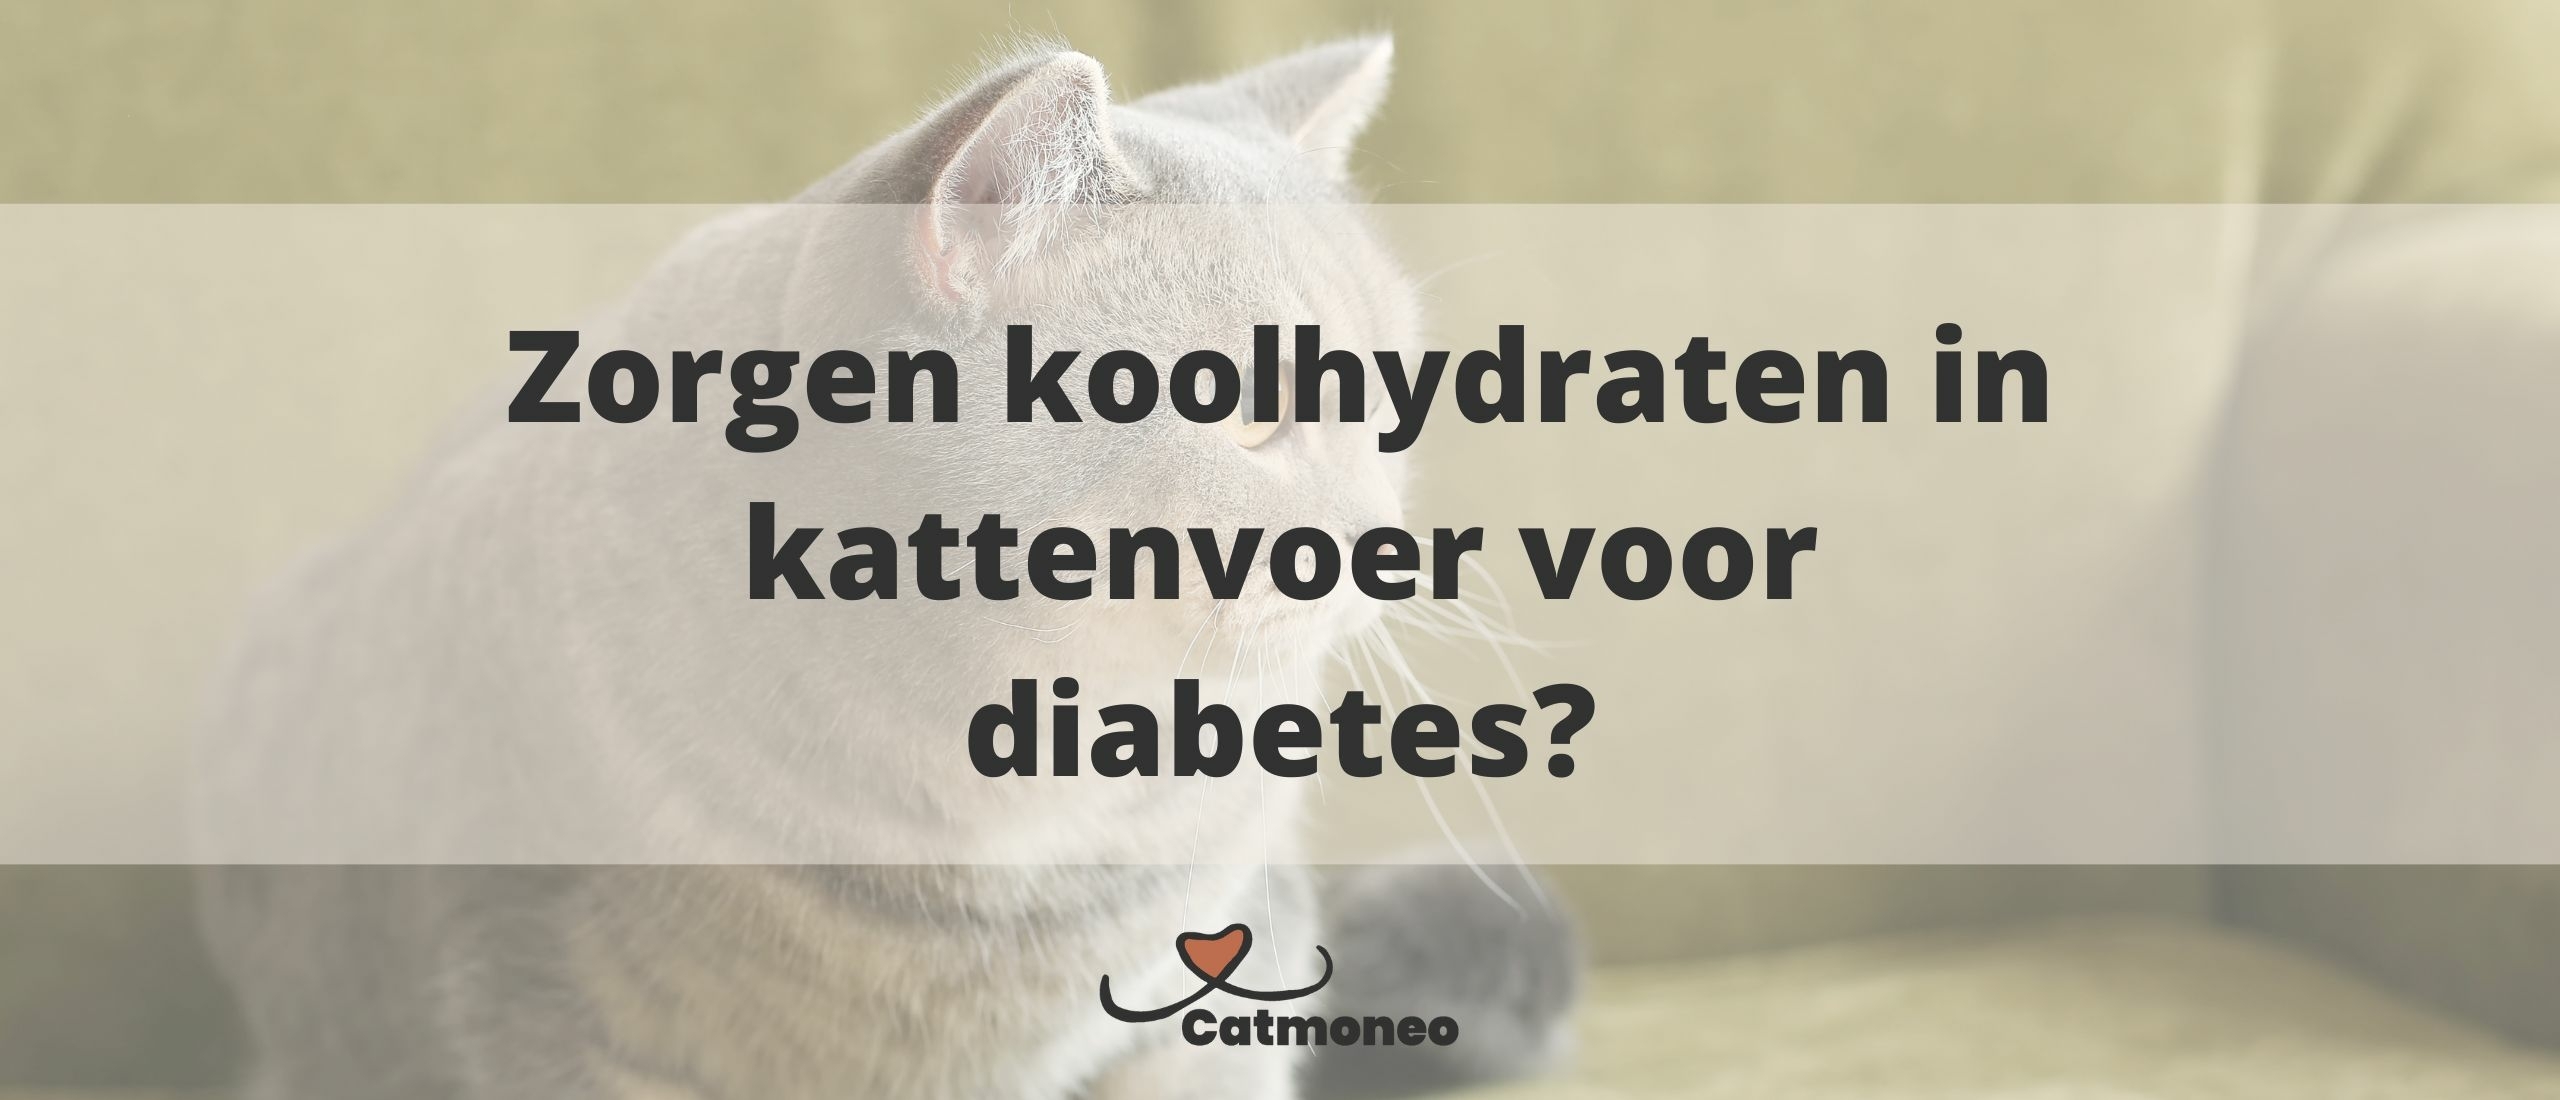 Zorgen koolhydraten in kattenvoer voor diabetes?